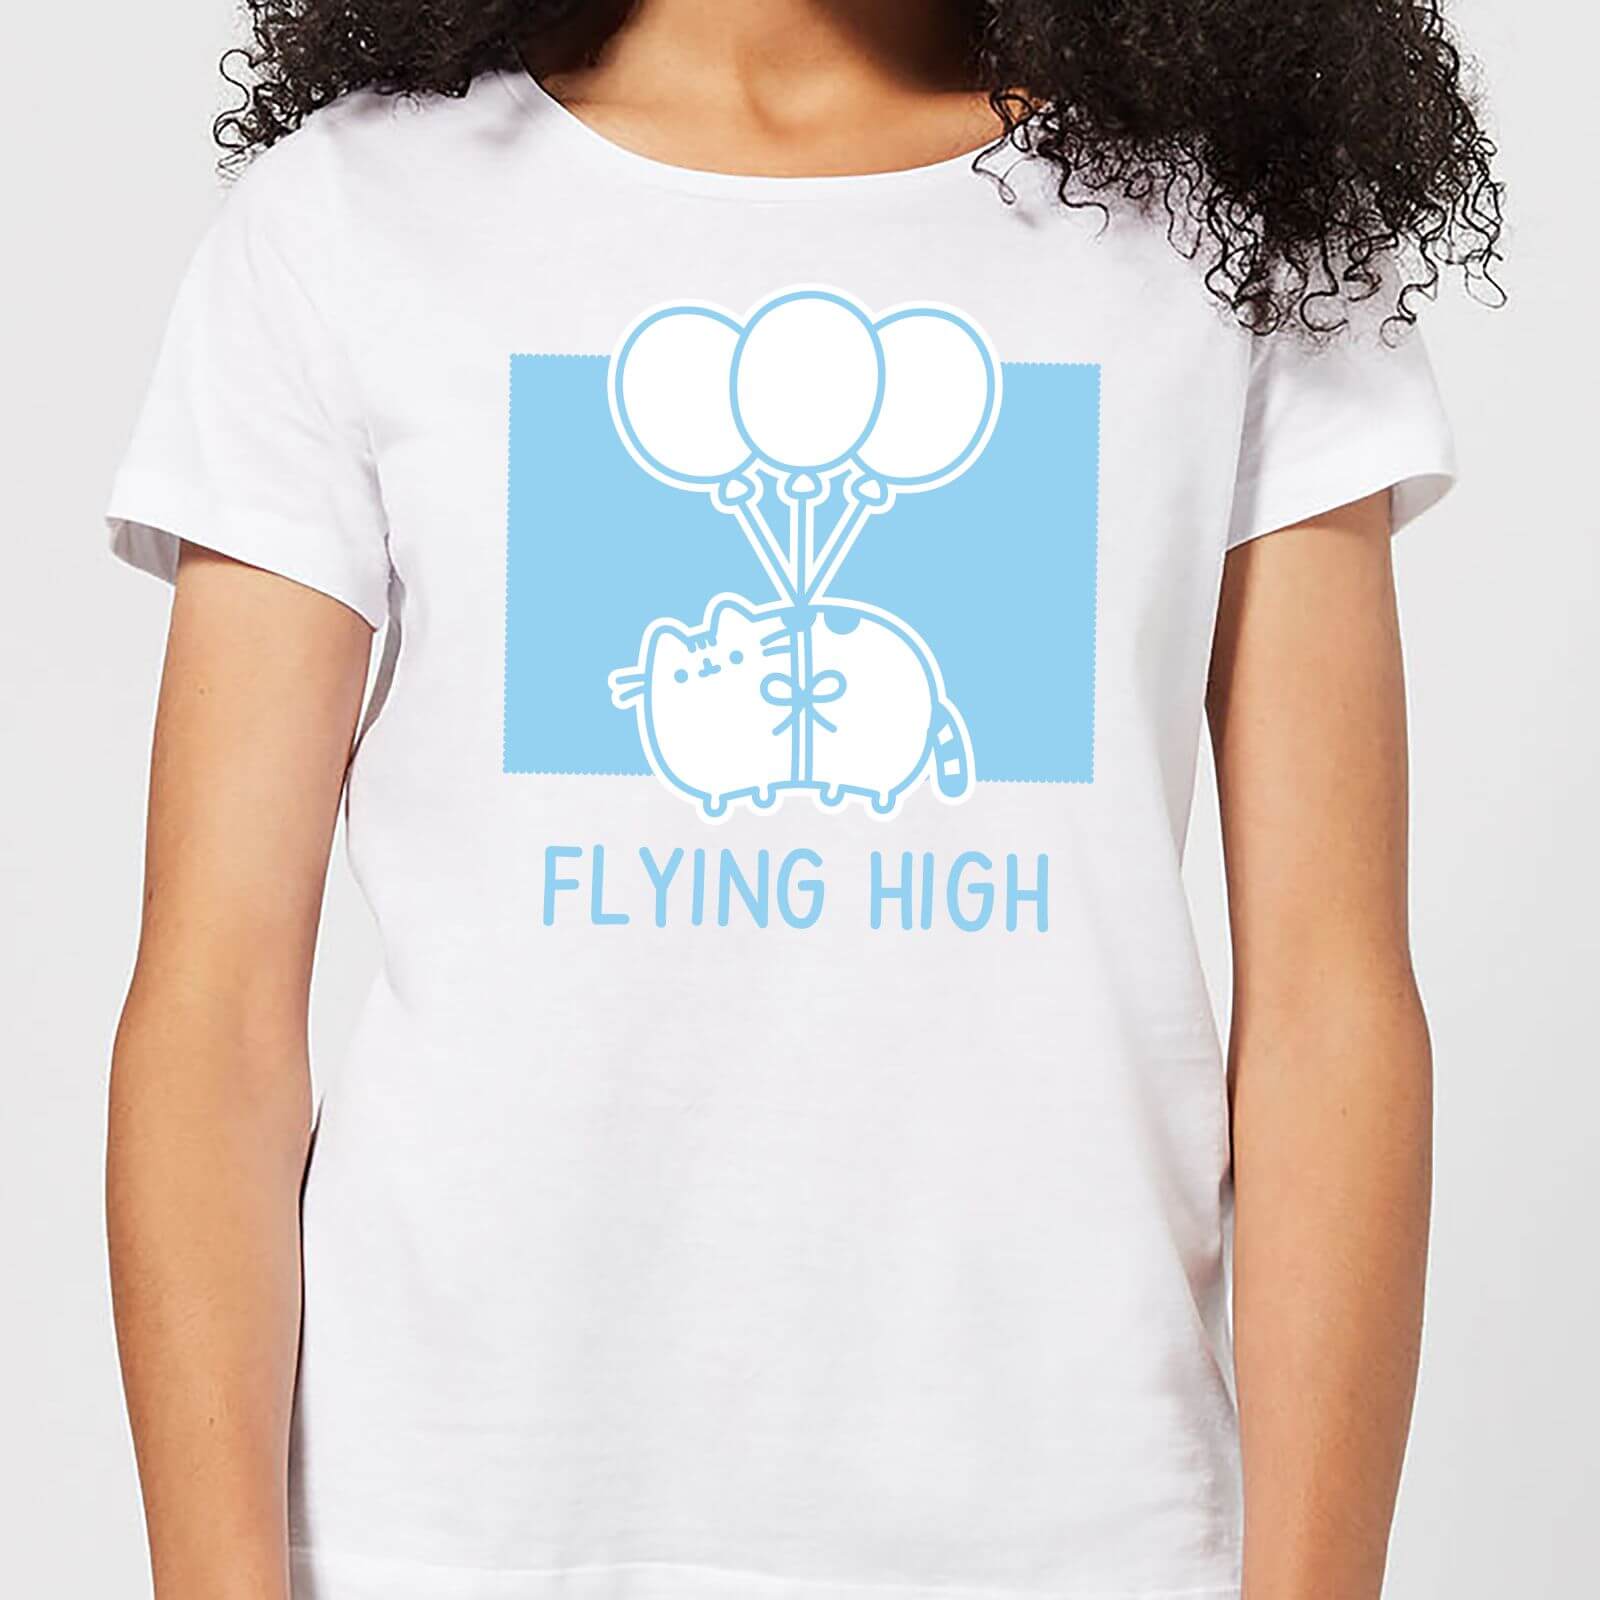 Pusheen Flying High Women's T-Shirt - White - S - White